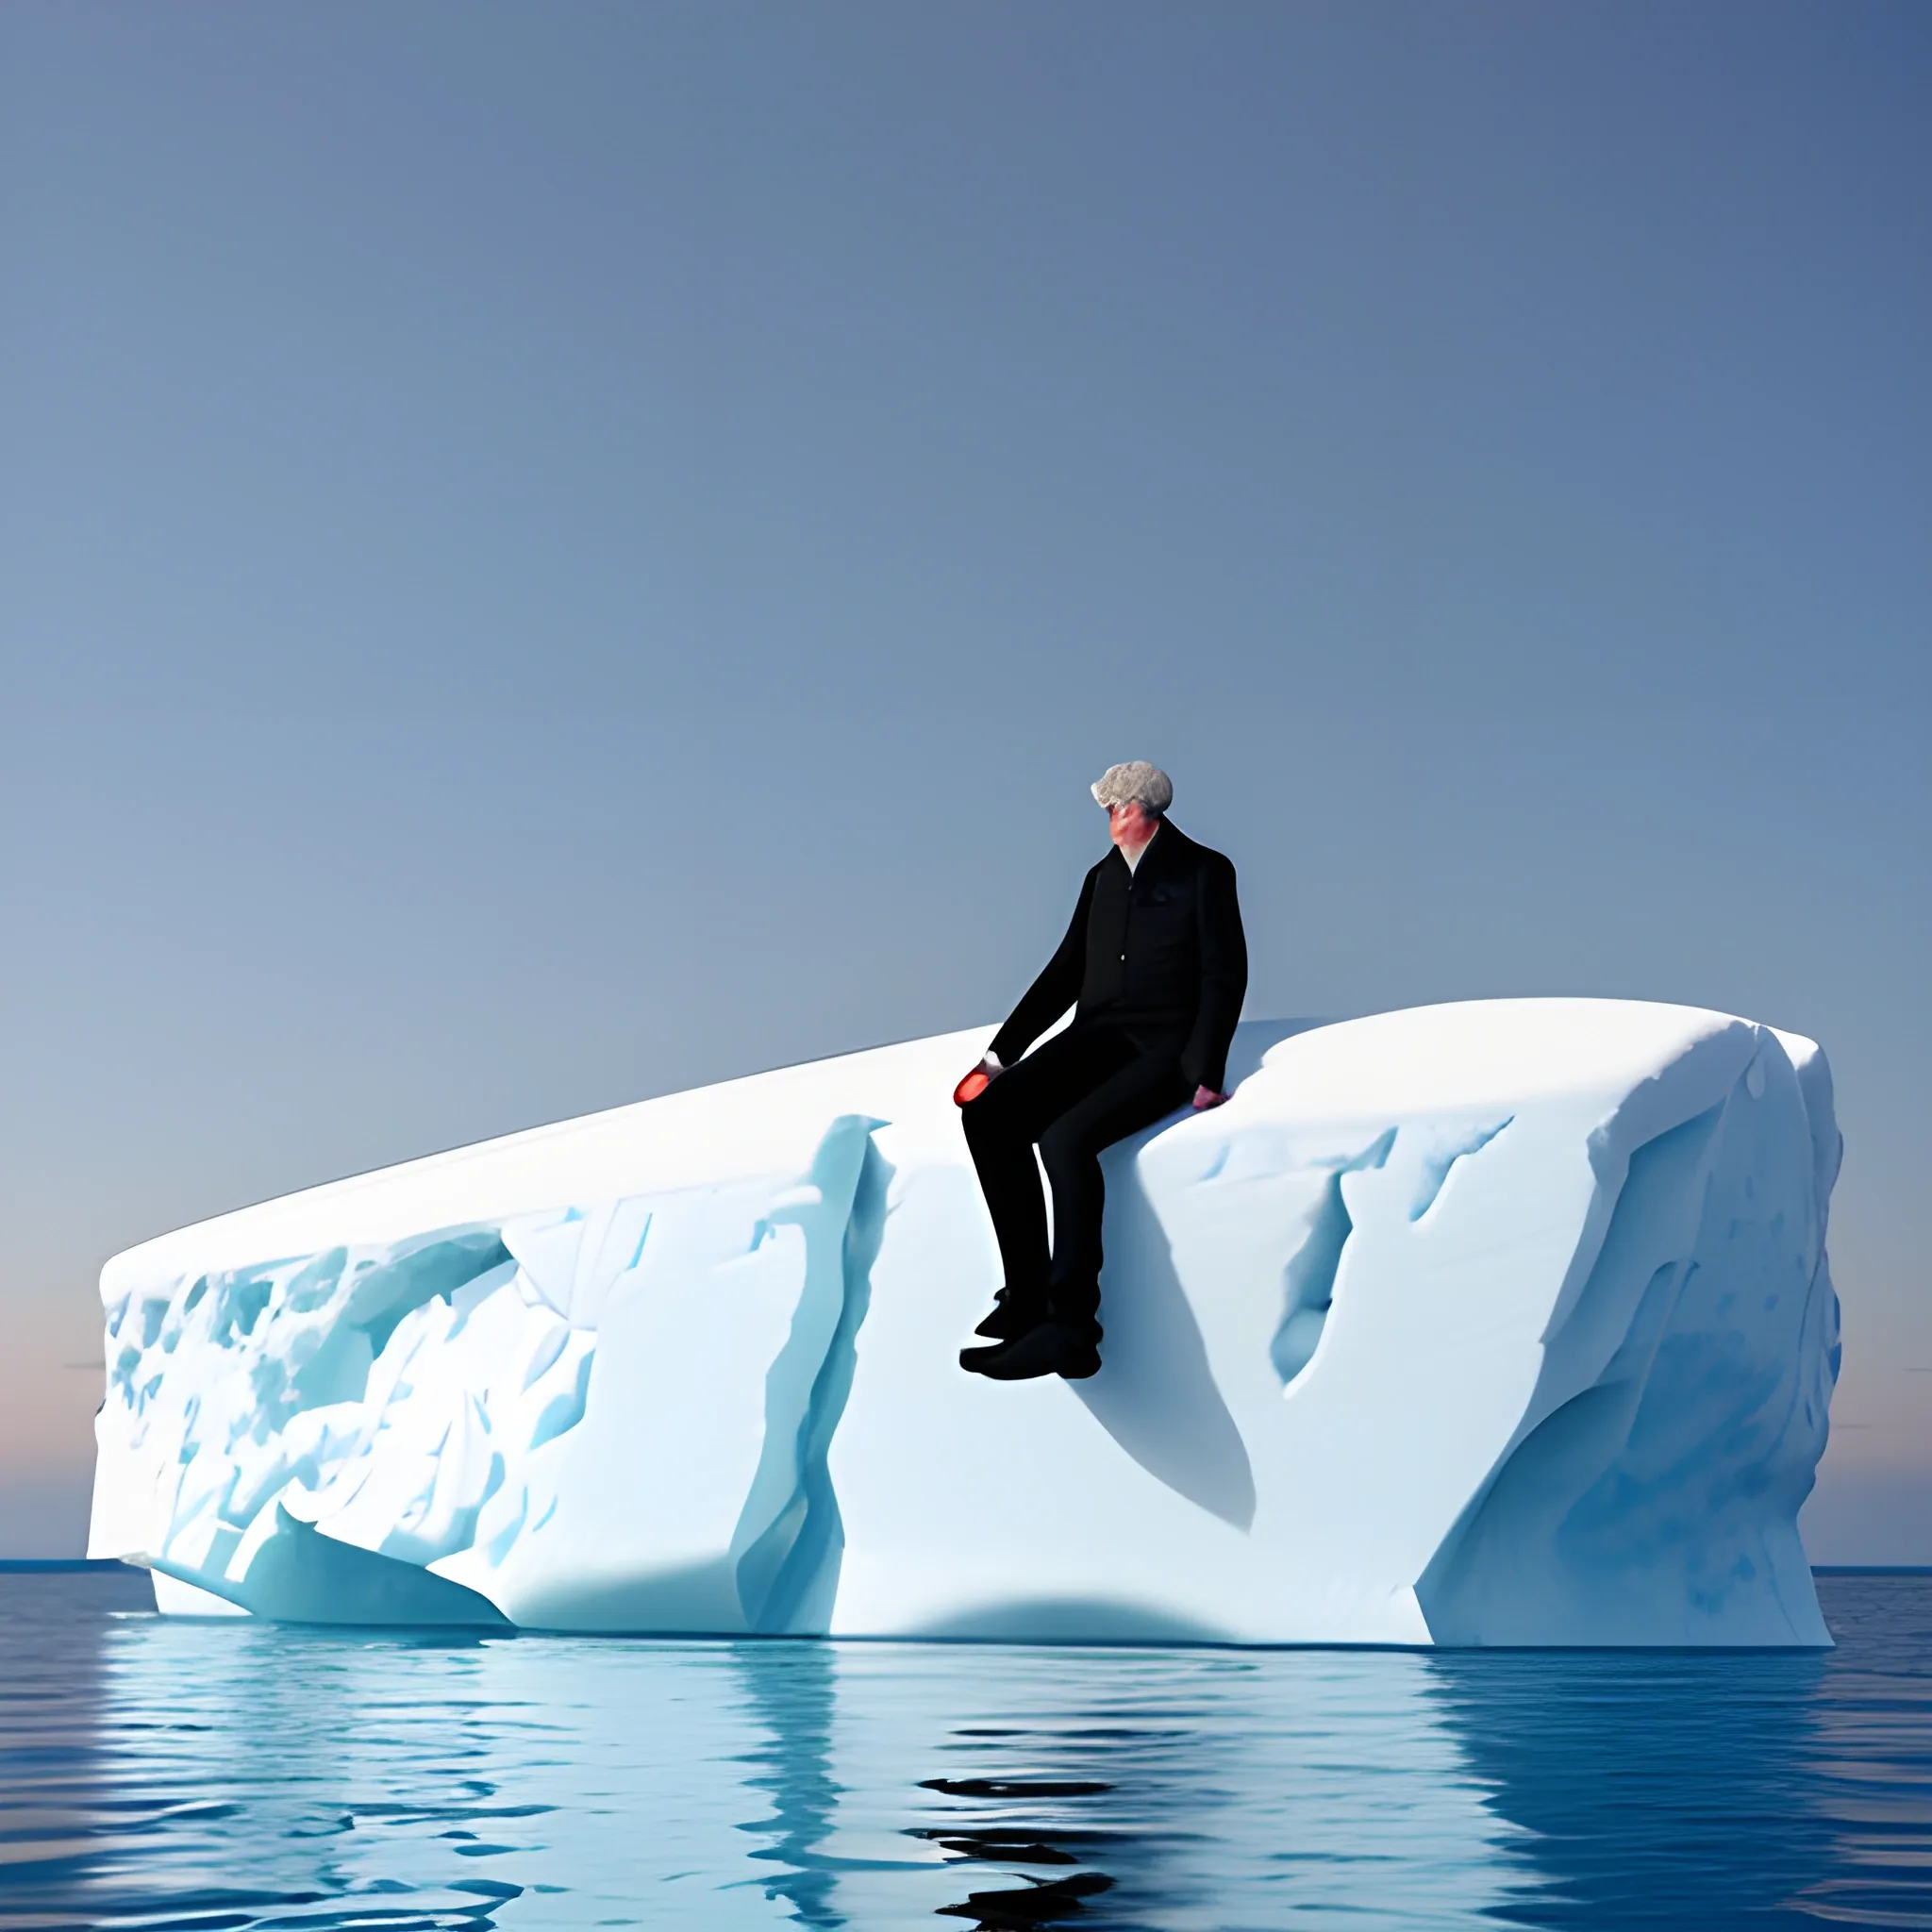  man on an iceberg
